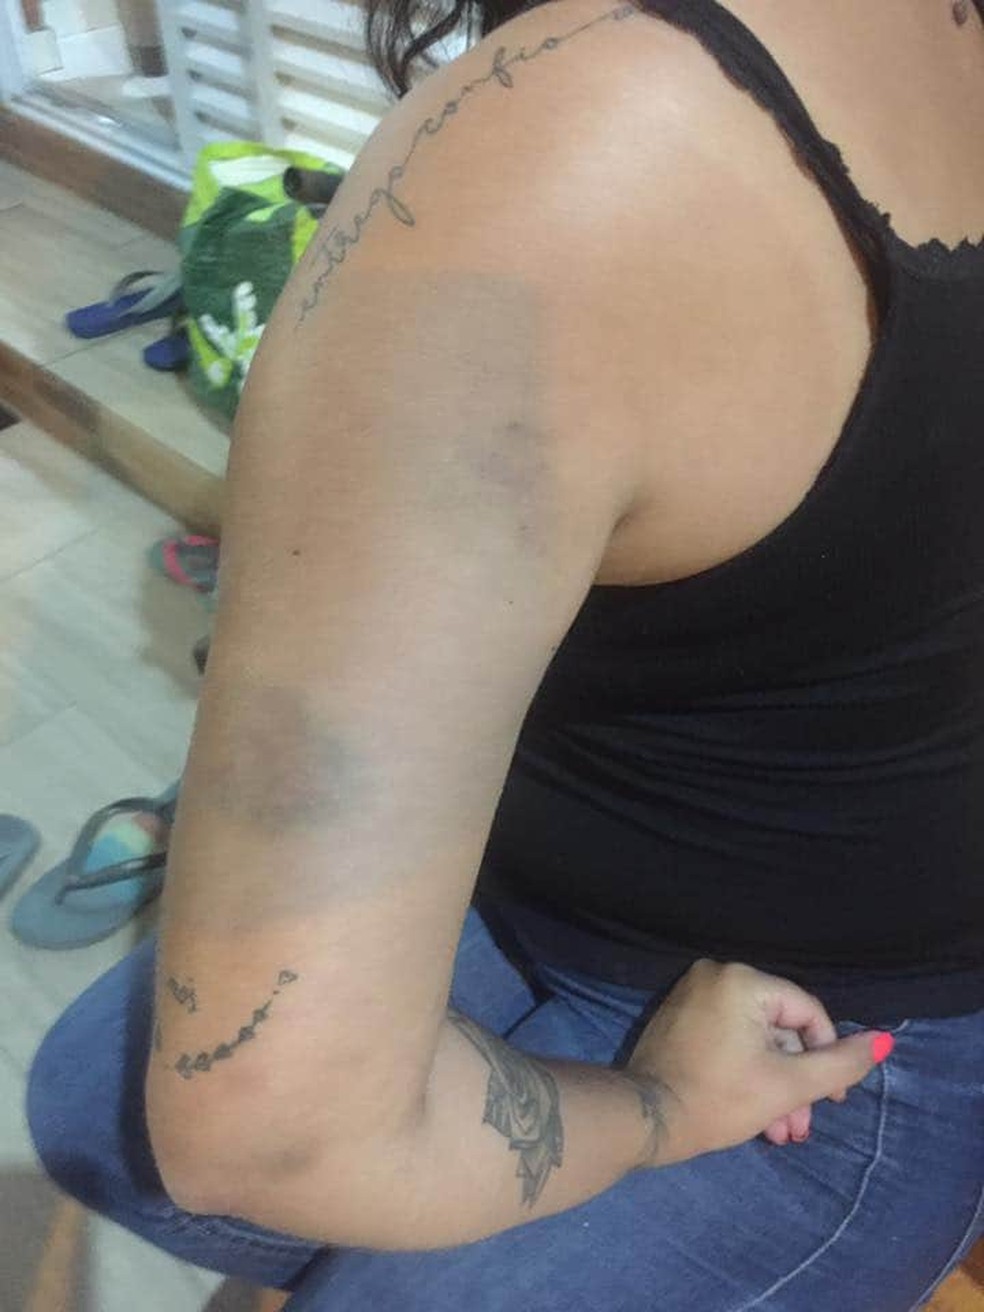 Vítima foi encaminhada ao pronto-socorro após agressões sofridas pelo namorado em São Vicente, SP — Foto: Reprodução/Facebook